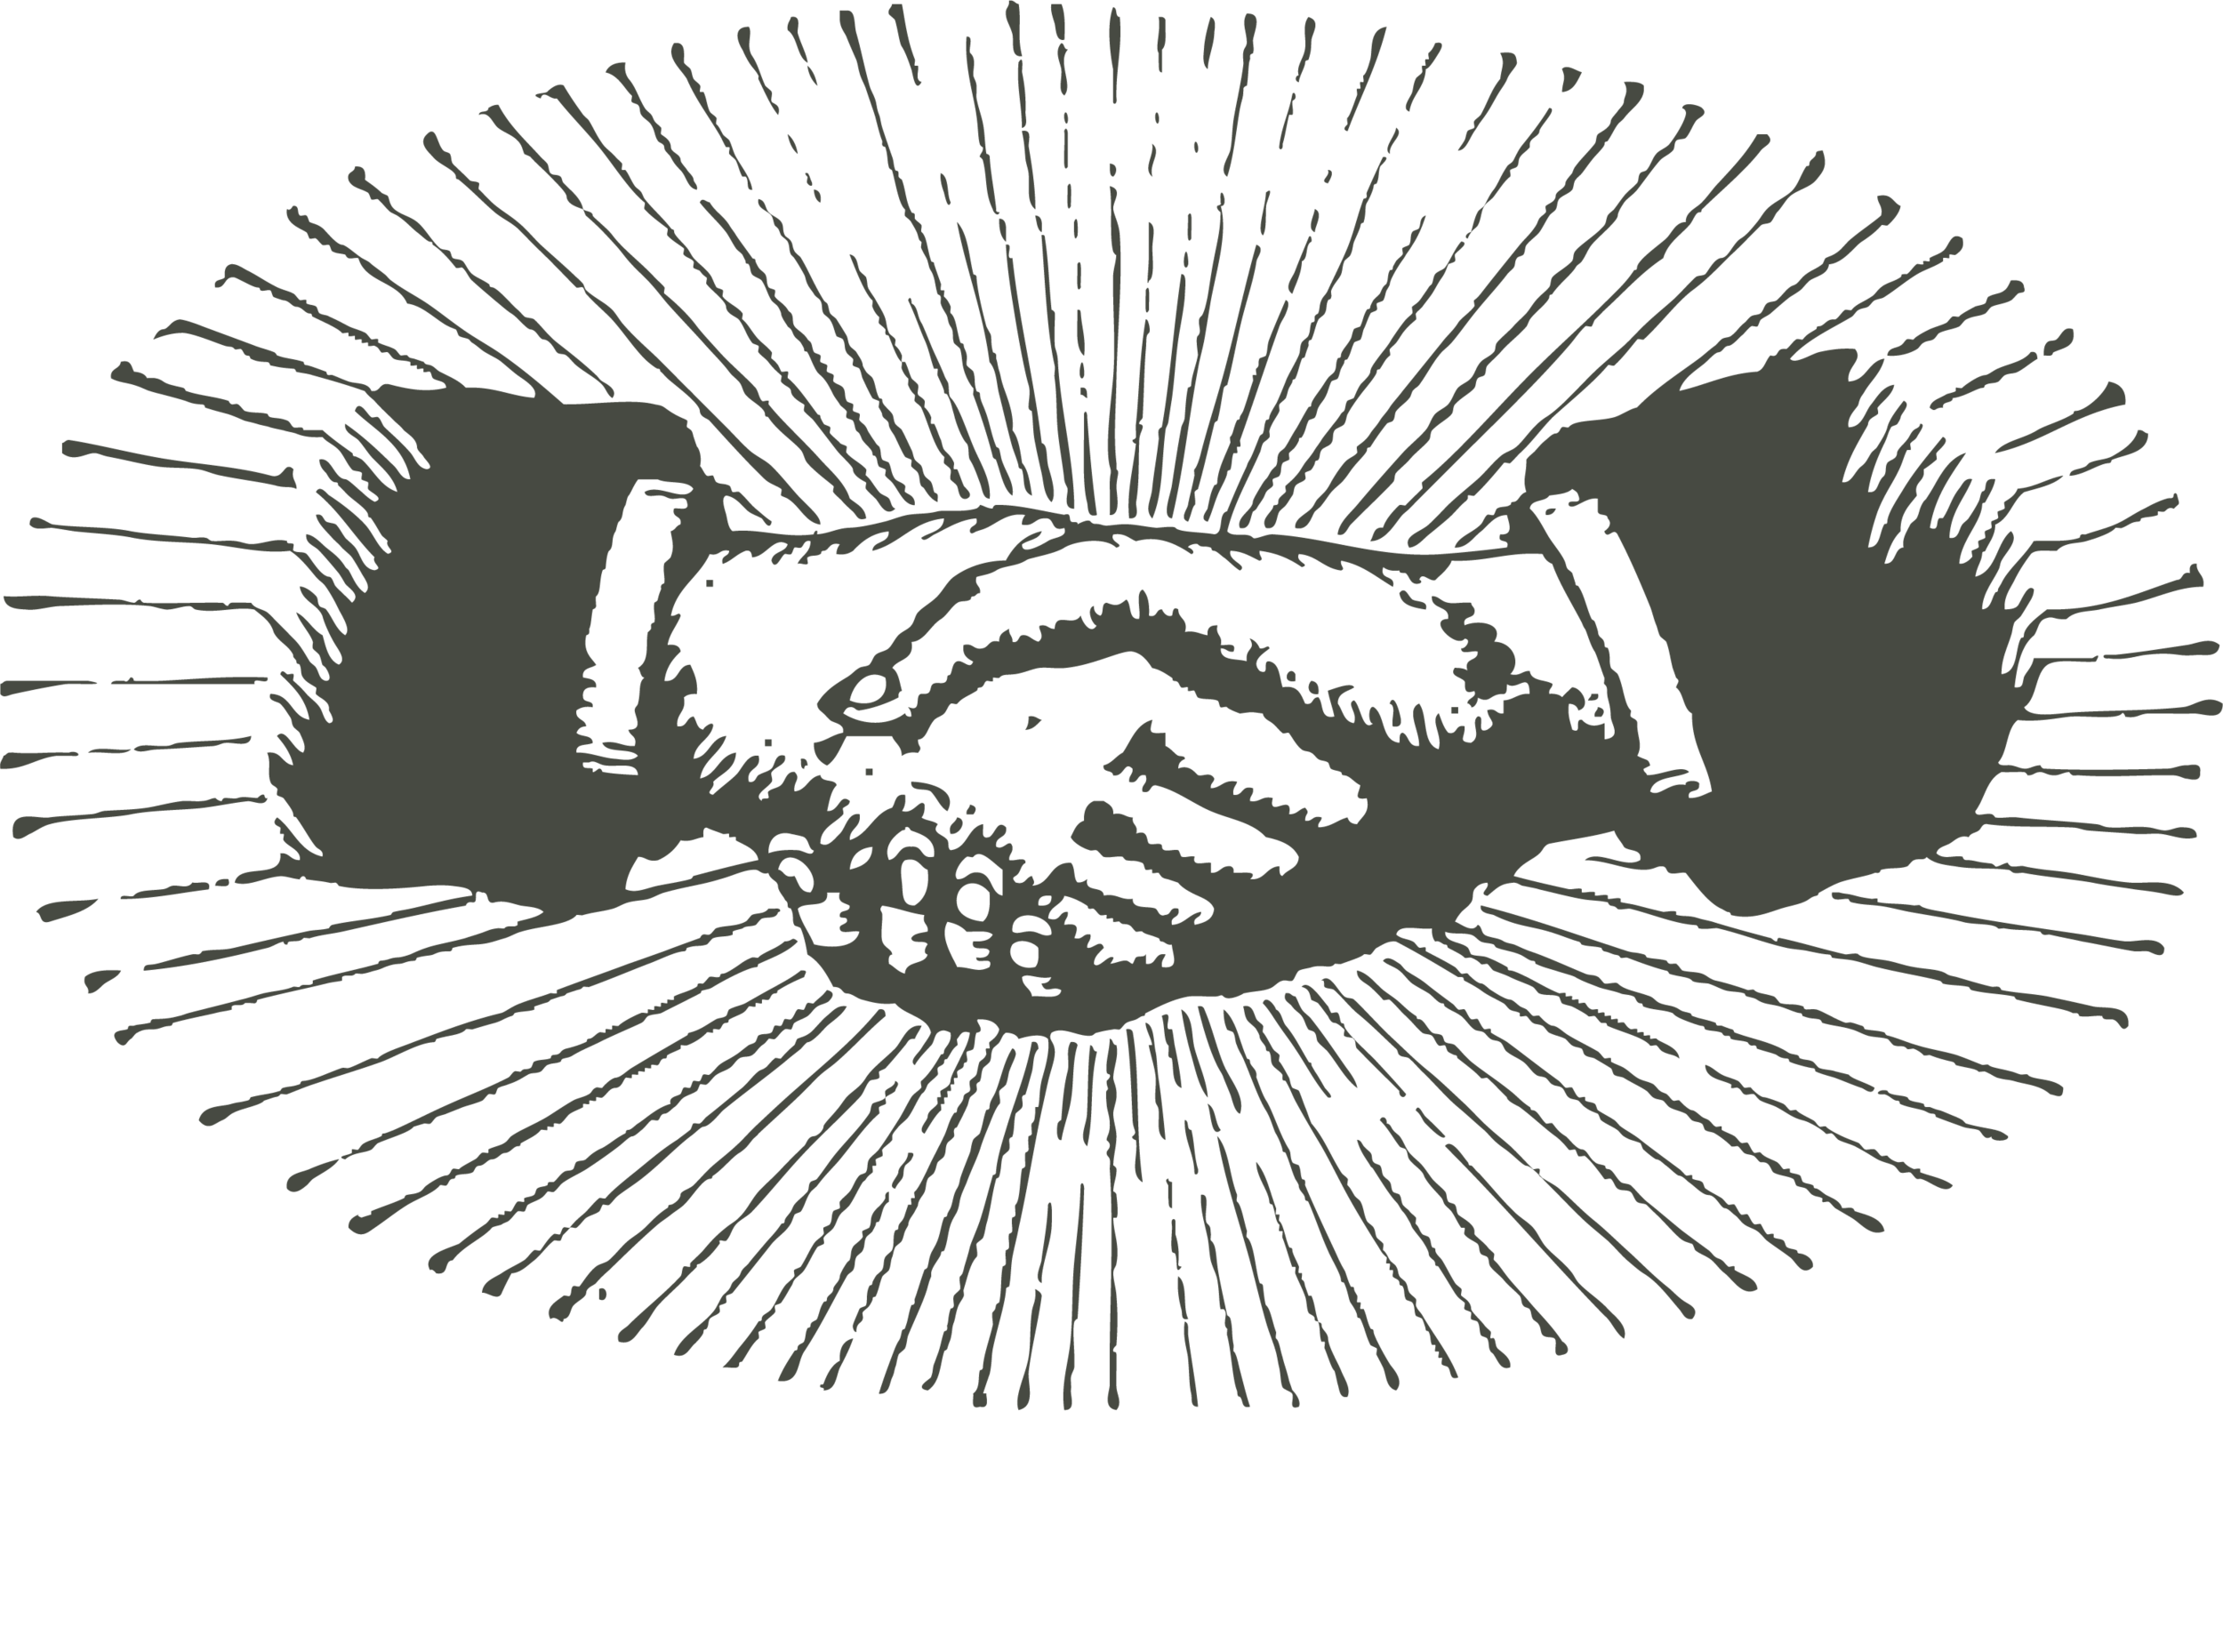 The Nicodemus Agency